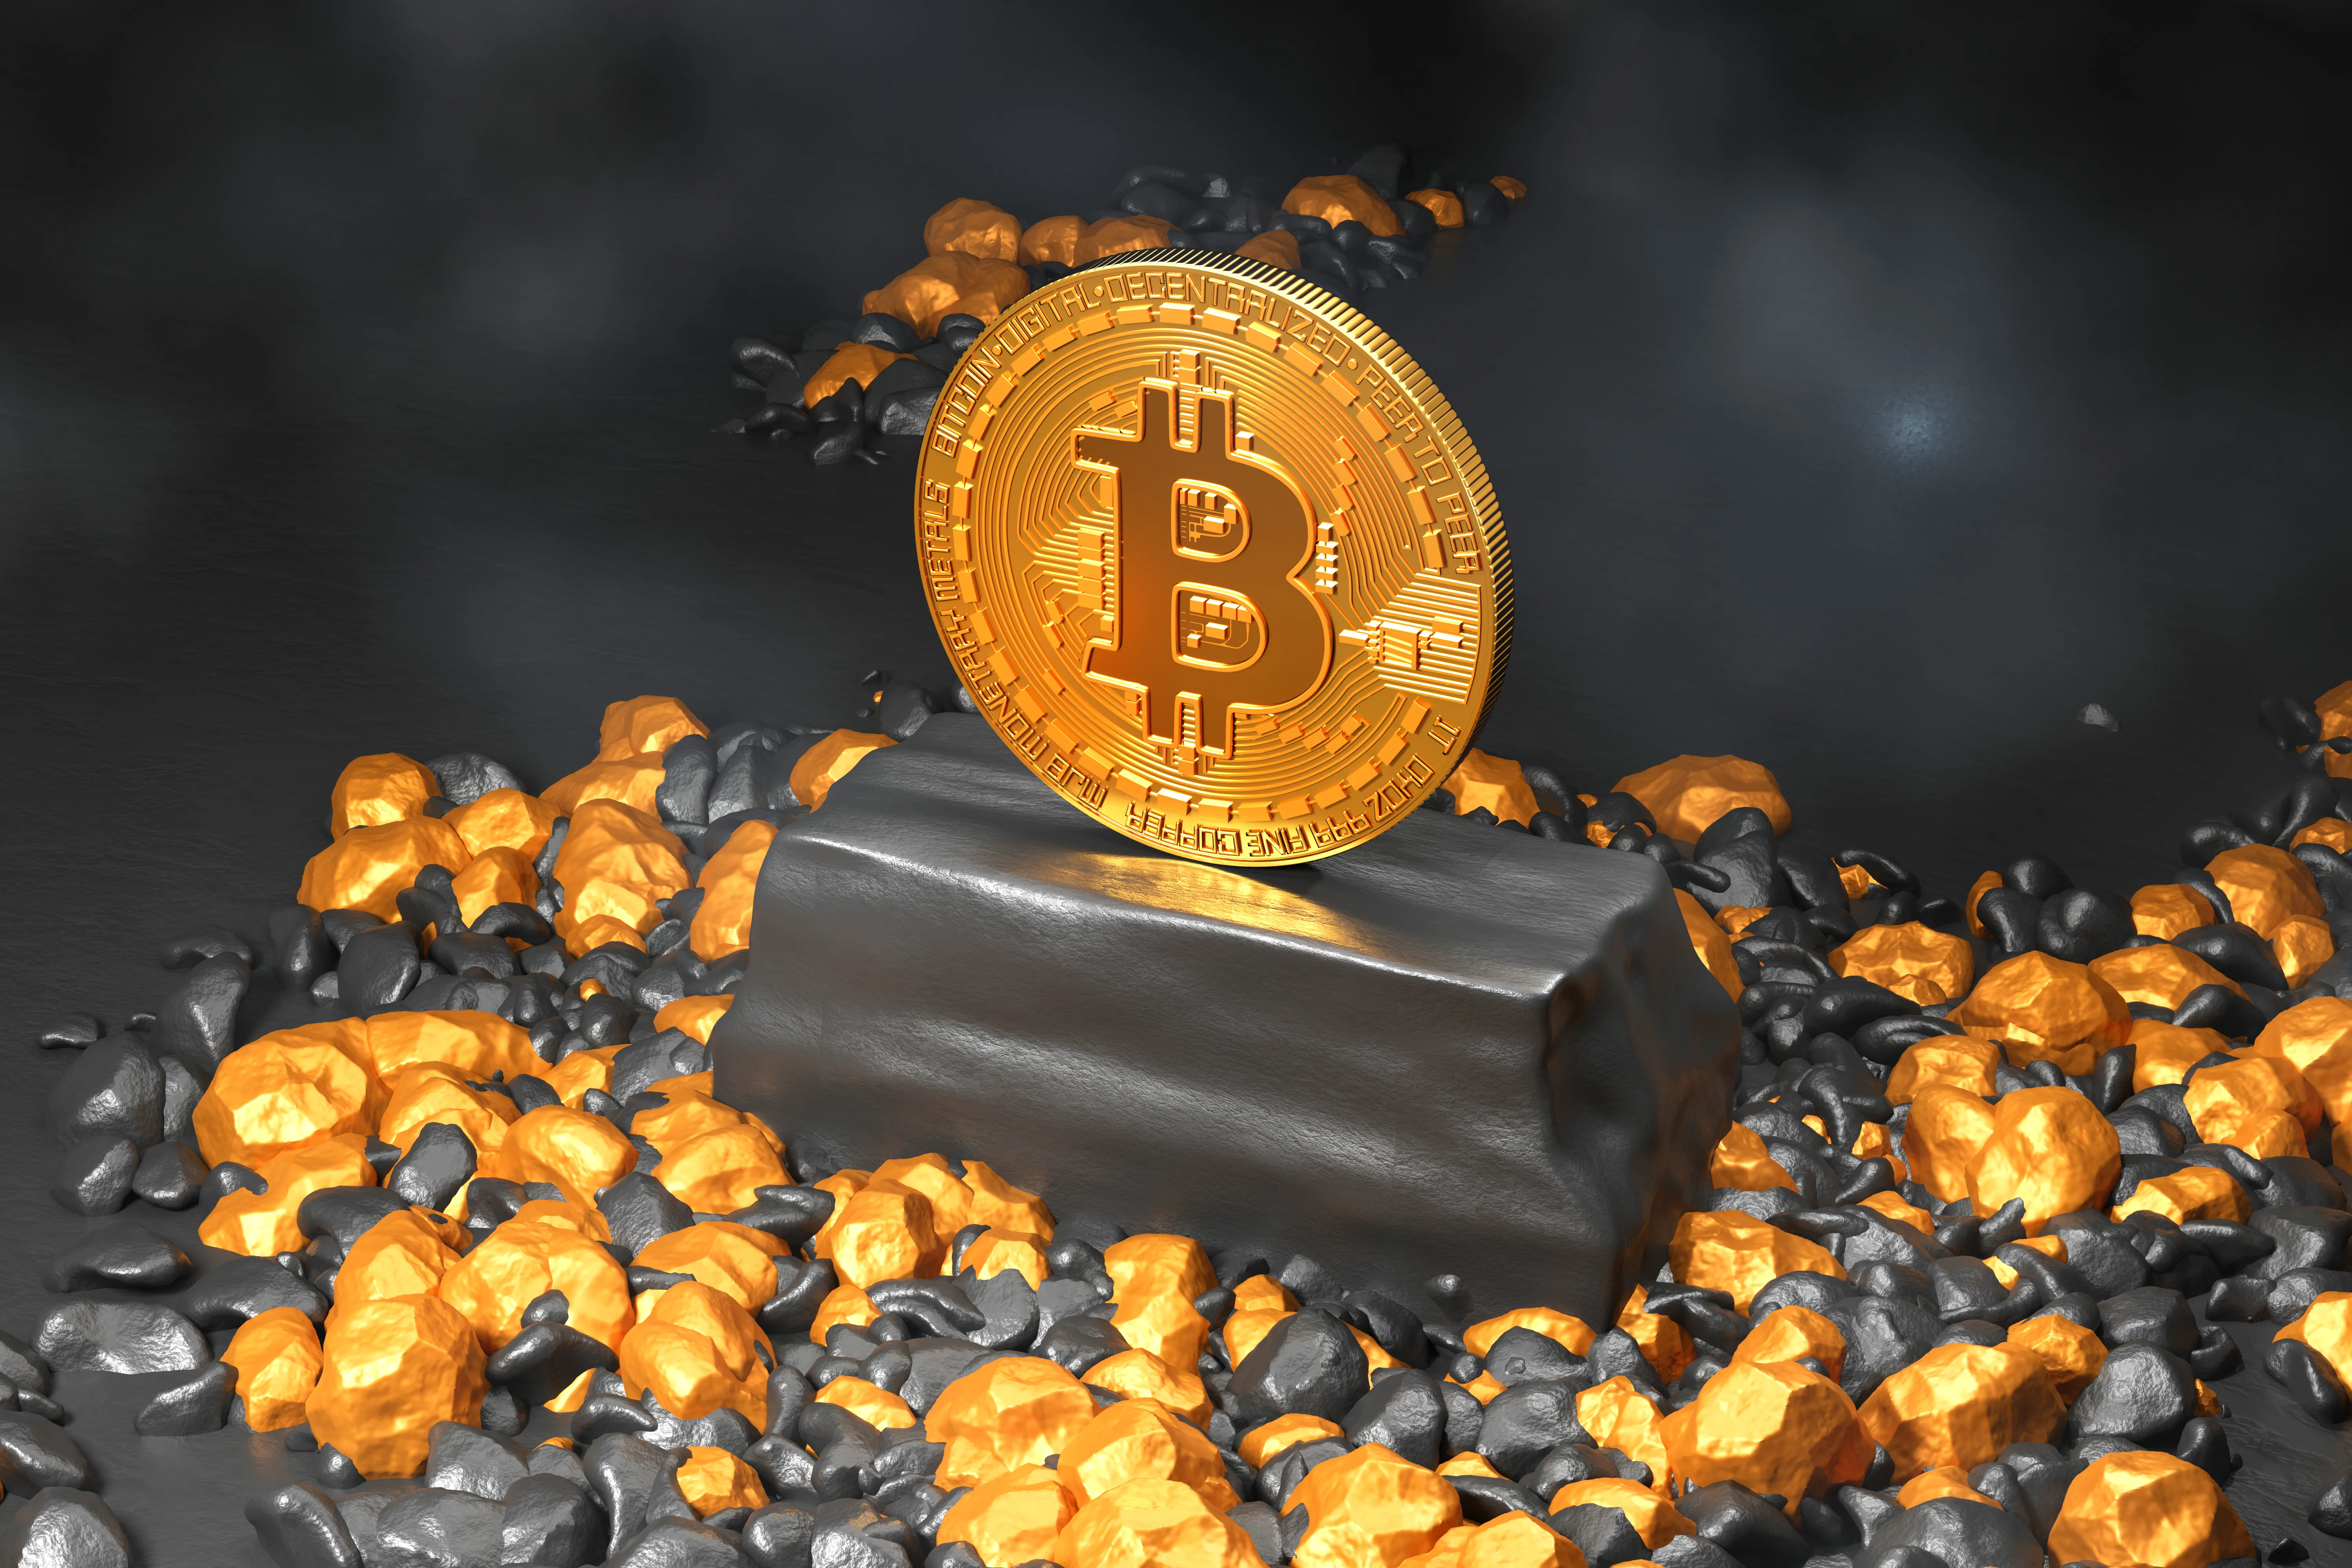 Bitcoin: Balancing risks and benefits